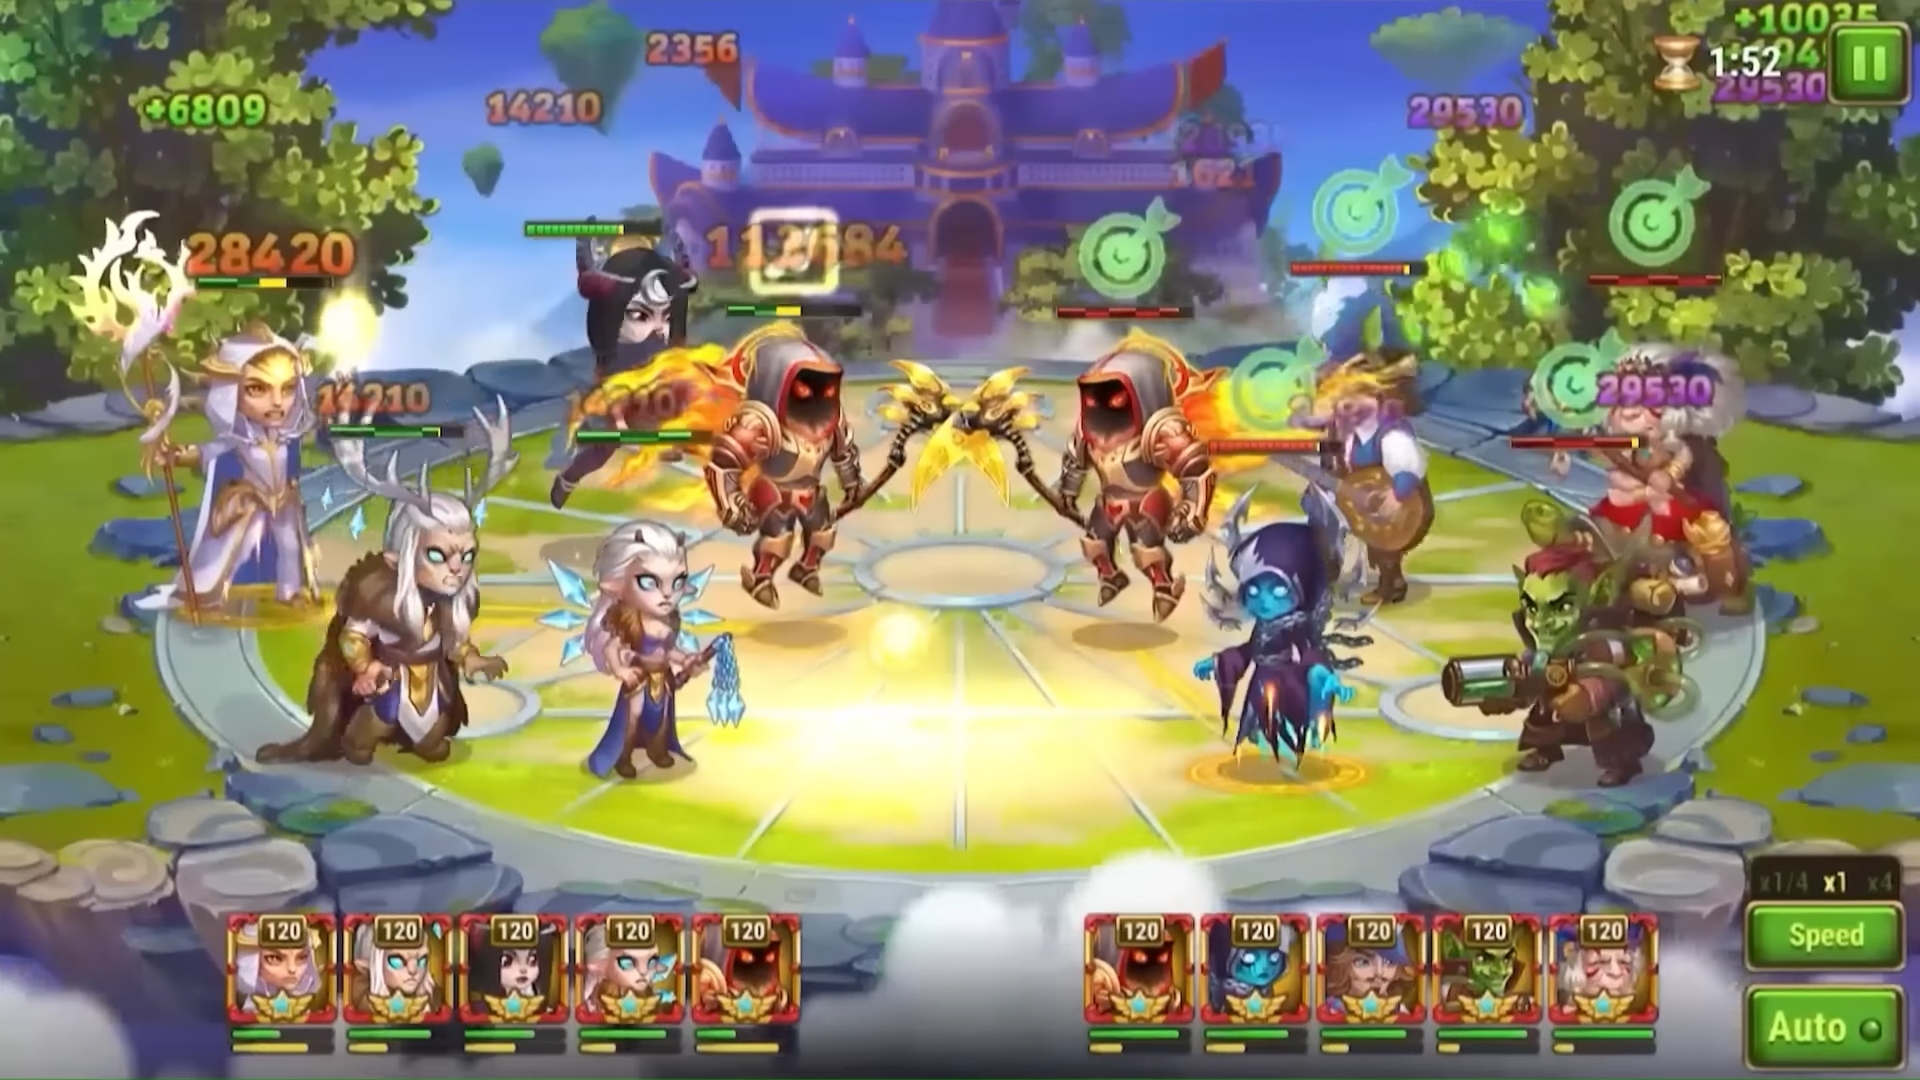 A screenshot of a battle in progress in Hero Wars.